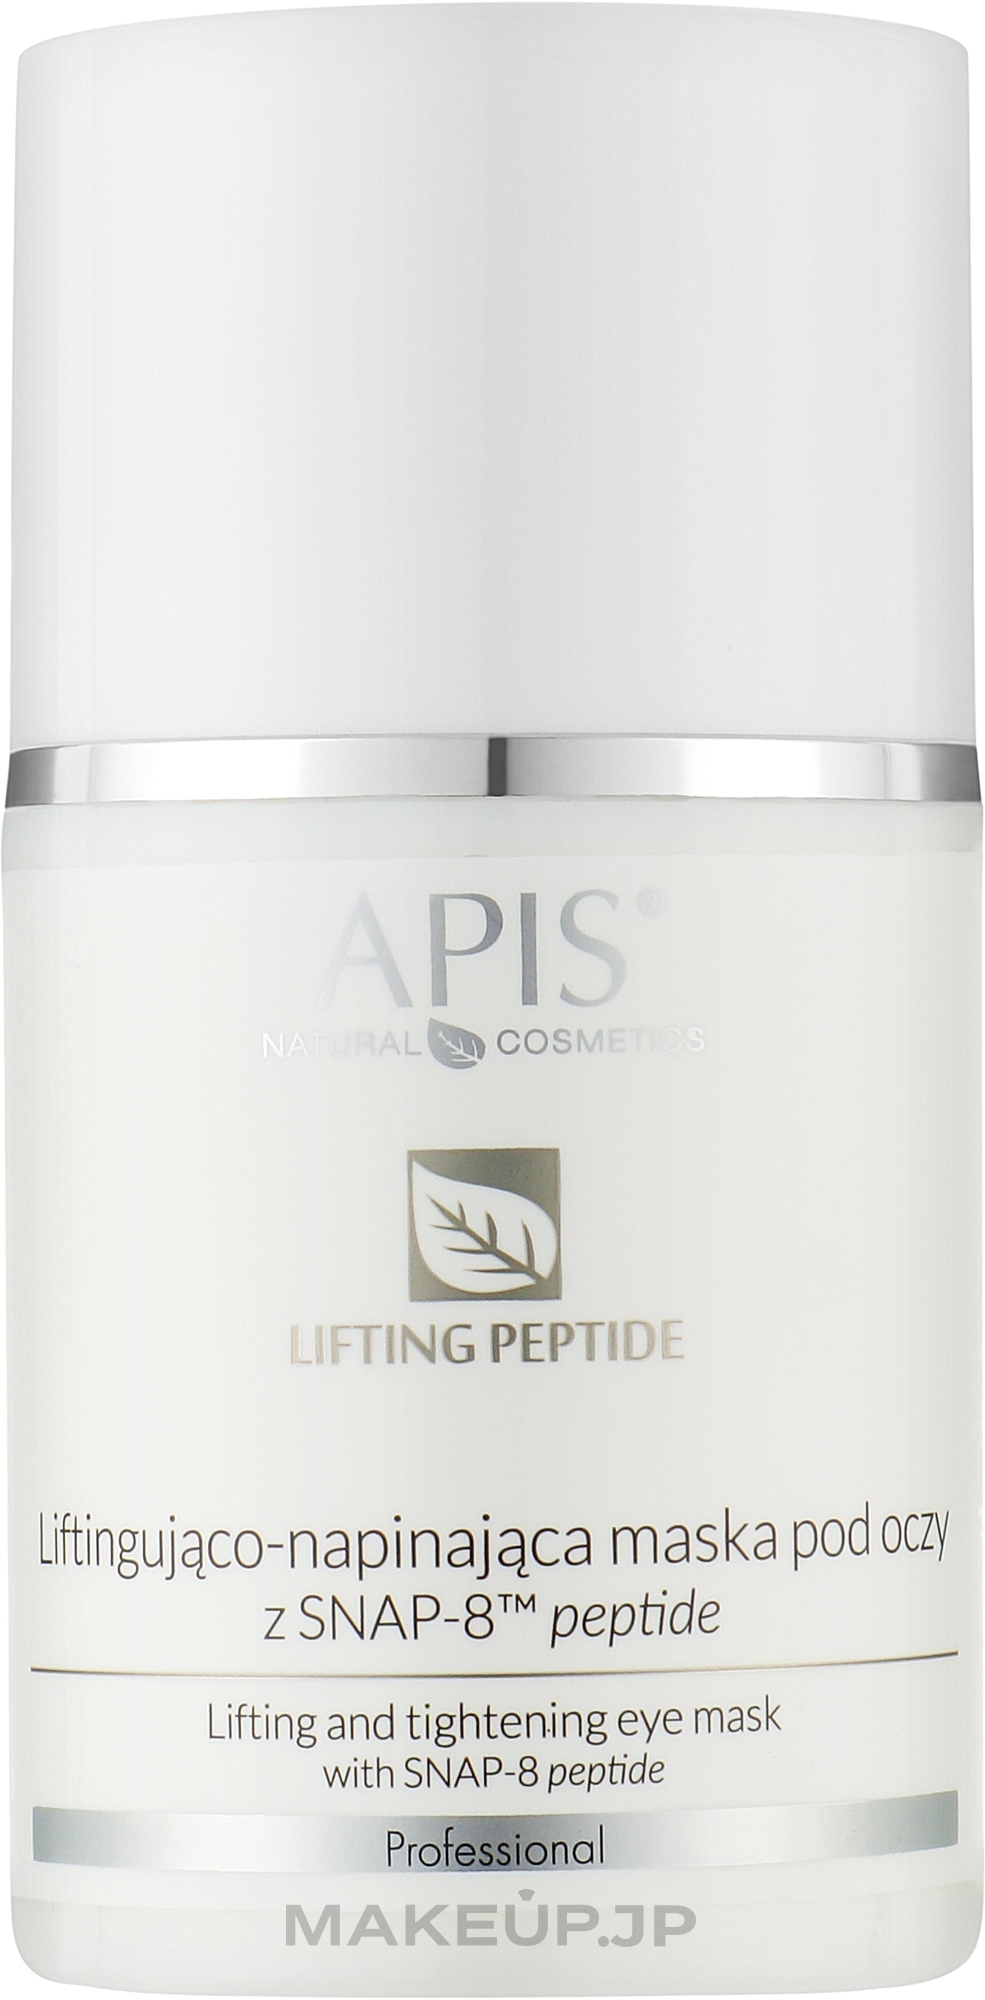 Lifting Peptide Eye Mask - APIS Professional Lifting Peptide Lifting & Tightening Eye Mask With SNAP-8 Peptide — photo 50 ml